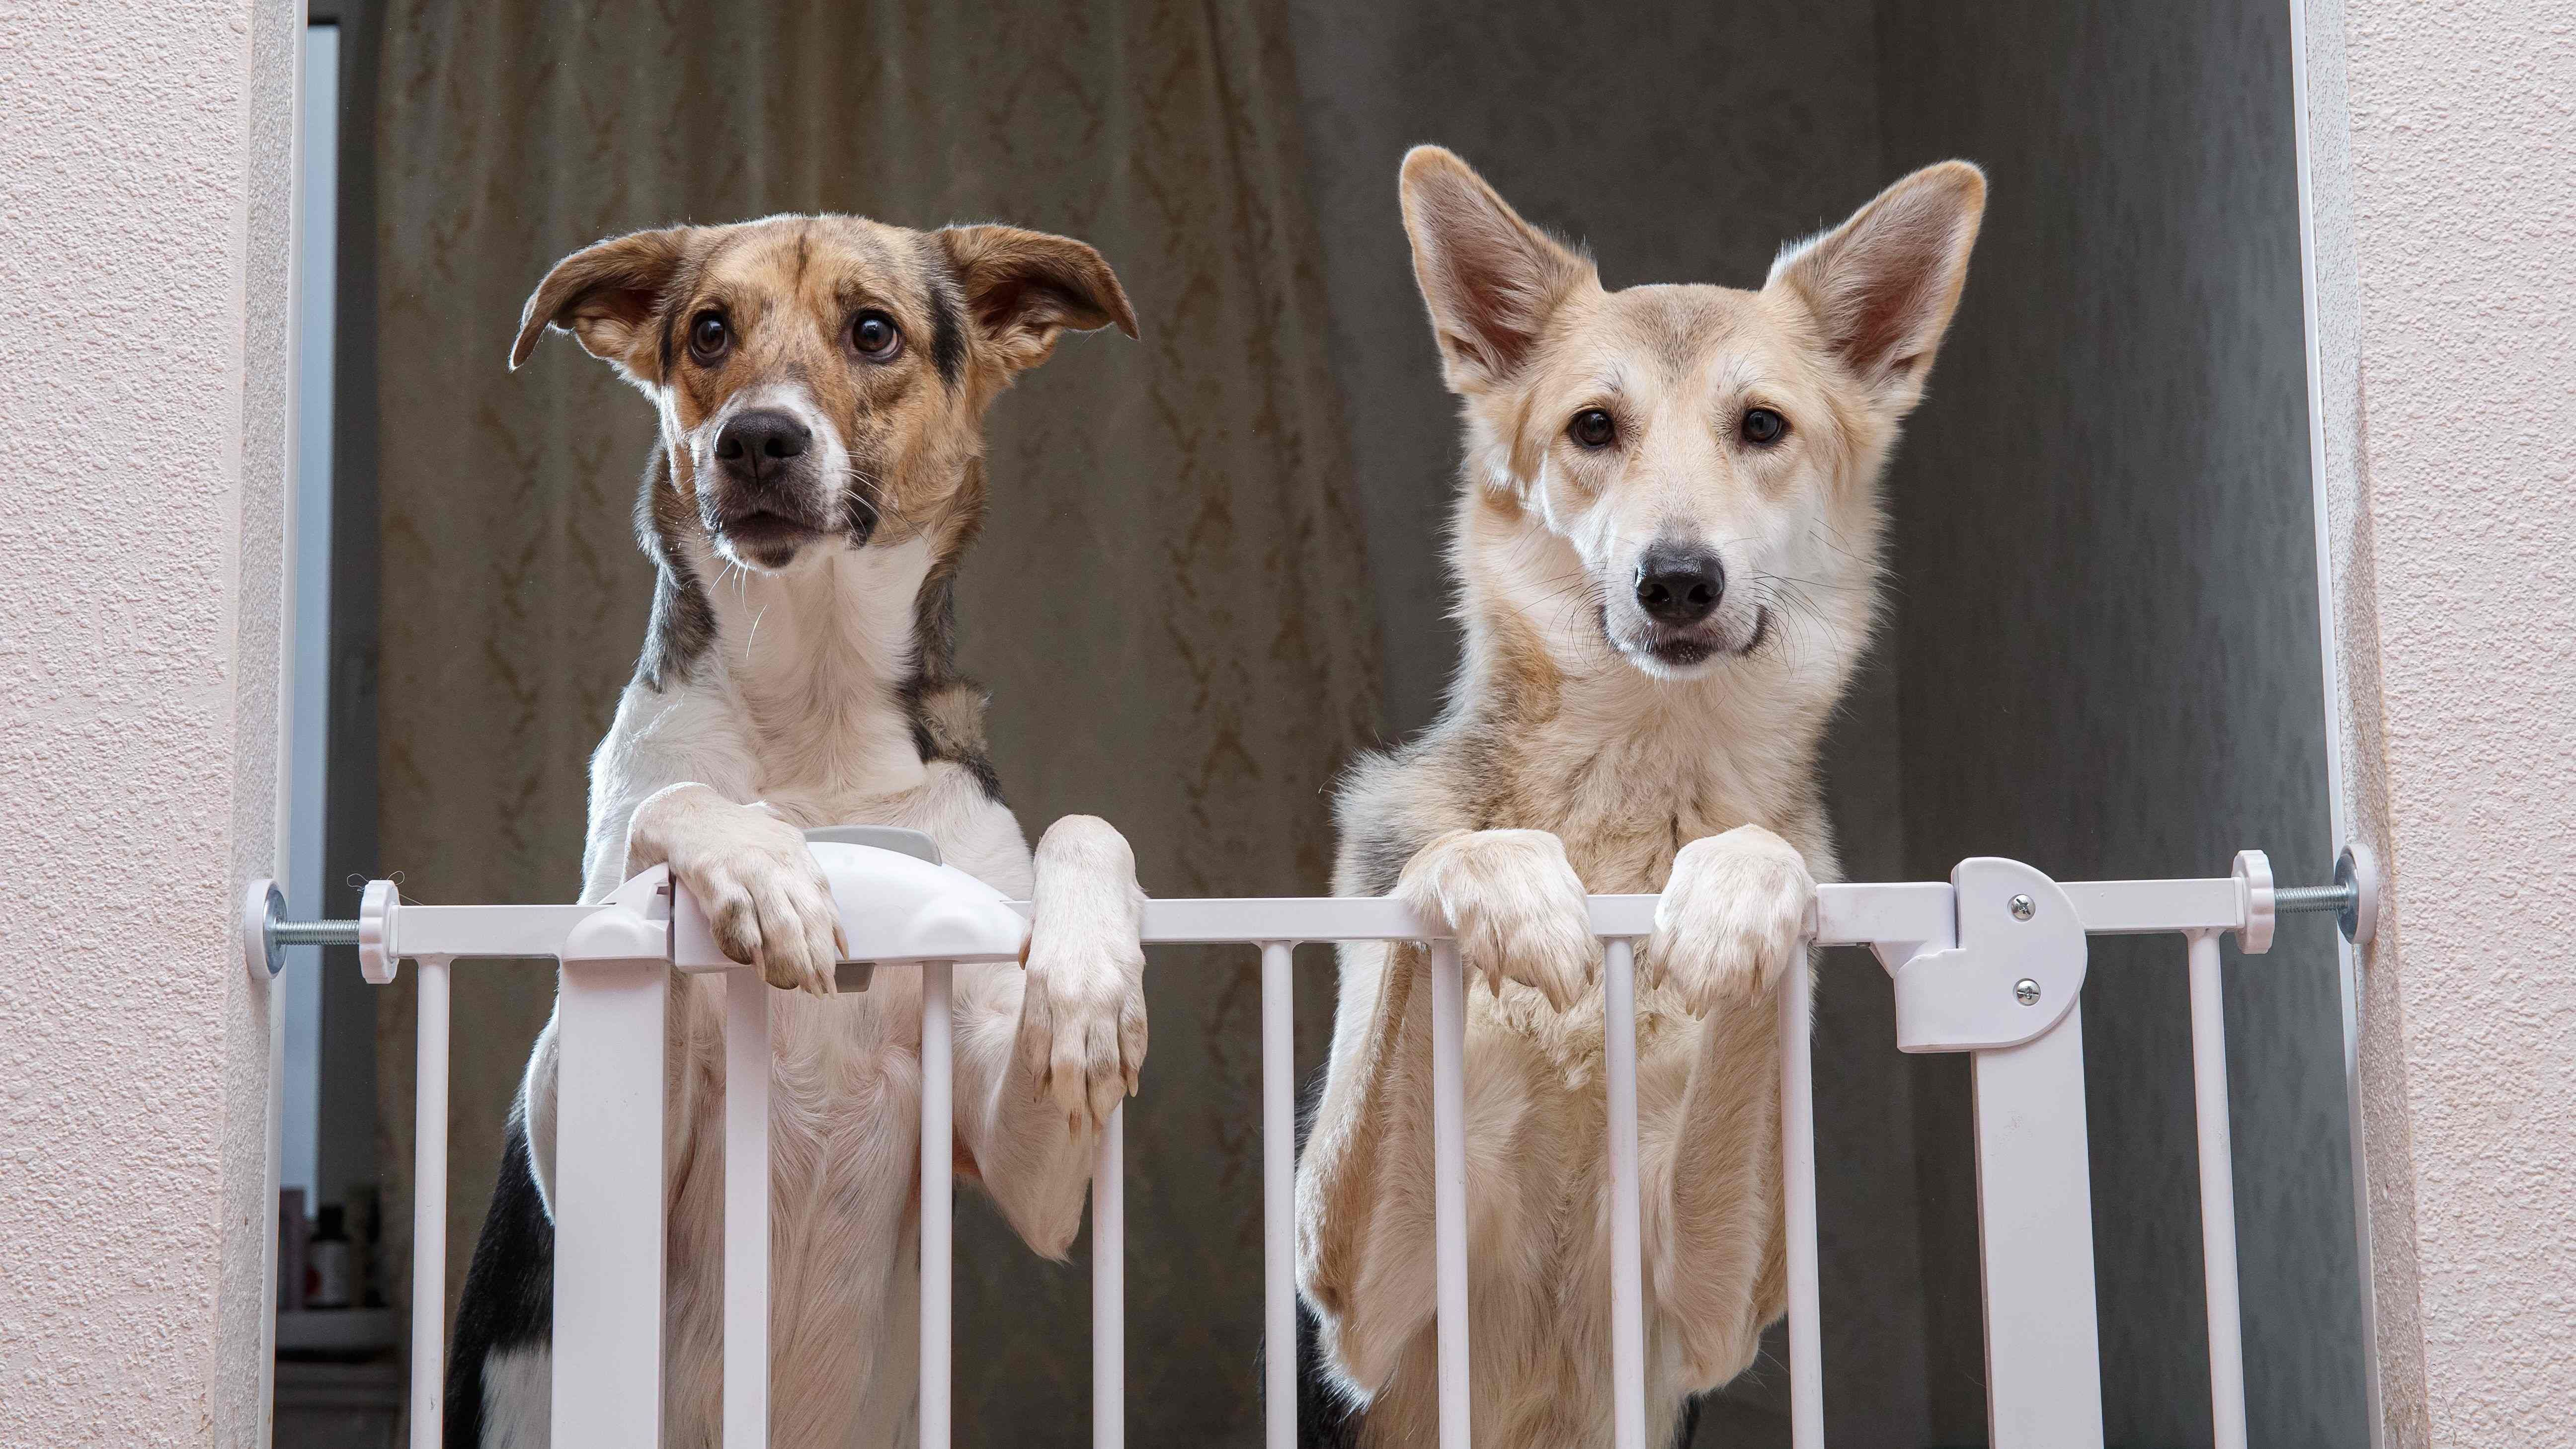 Barrière et escalier pour chien : comment choisir